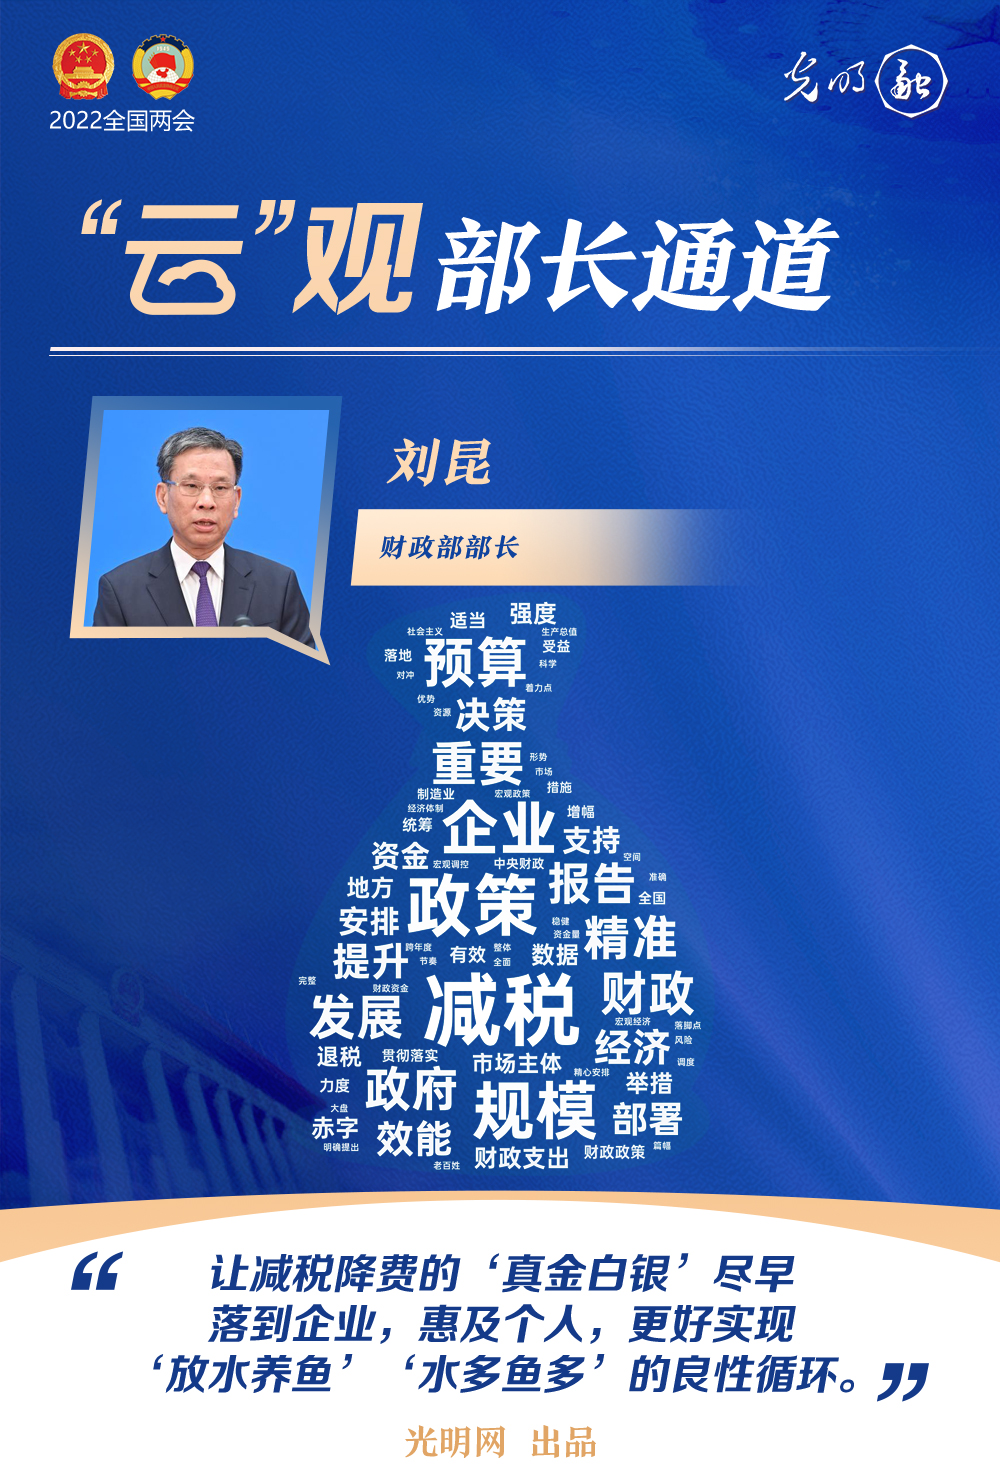 财政部部长刘昆回应“减税降费”问题